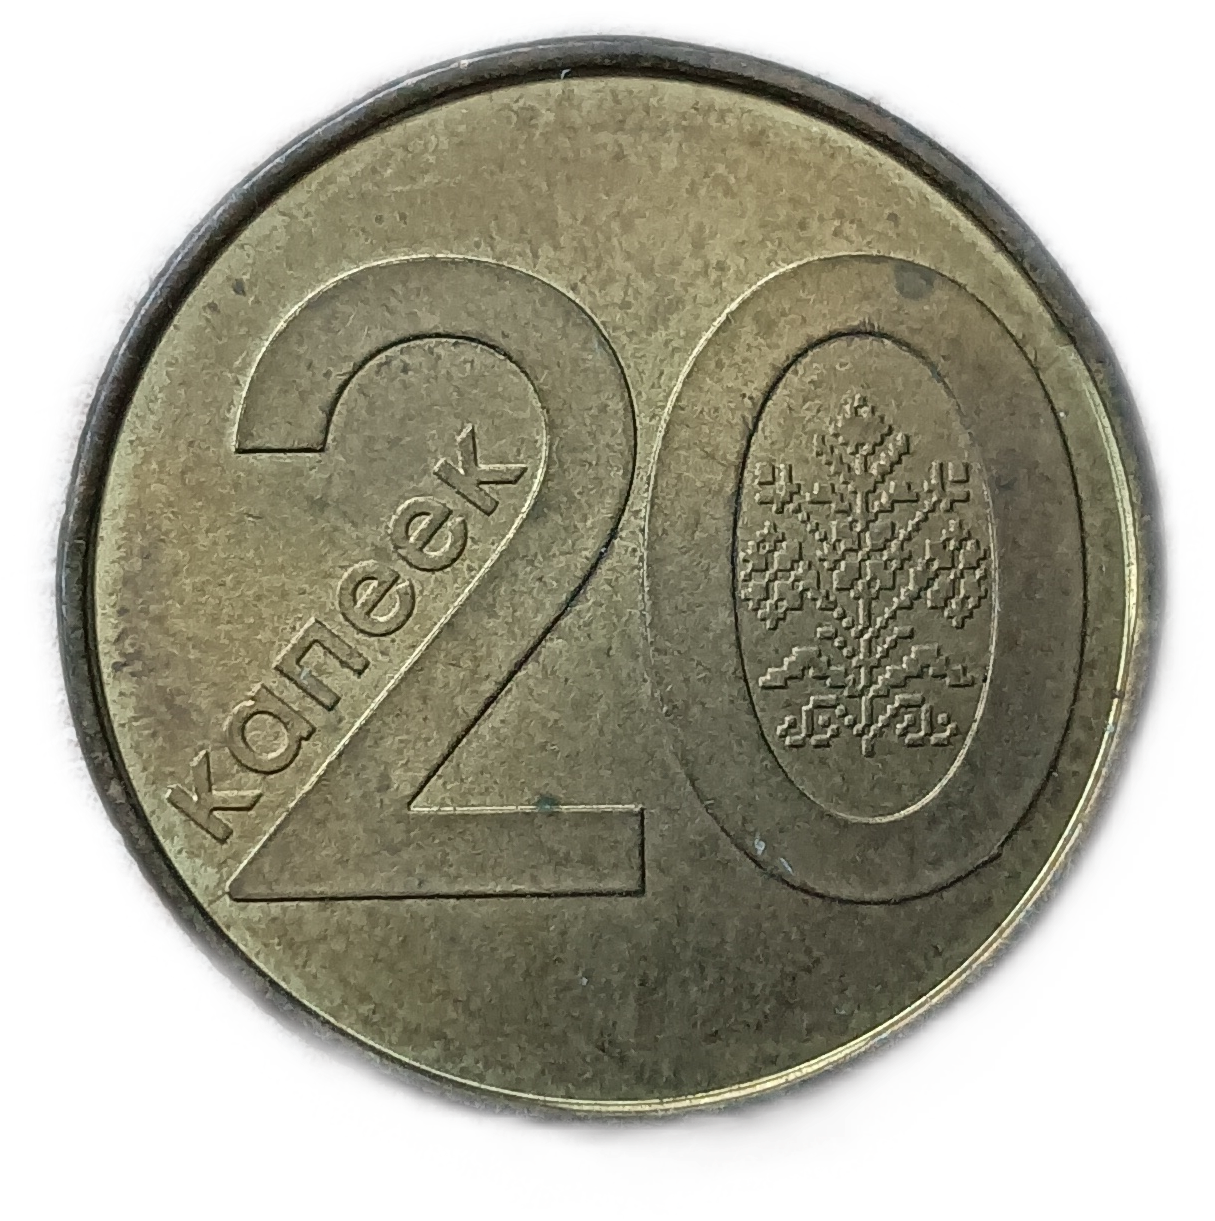 5 белорусских копеек. 20 Белорусских копеек 2009 года. Белорусские монеты. Монеты Белоруссия 5 копеек 2009. Беларусь монета жыцце.